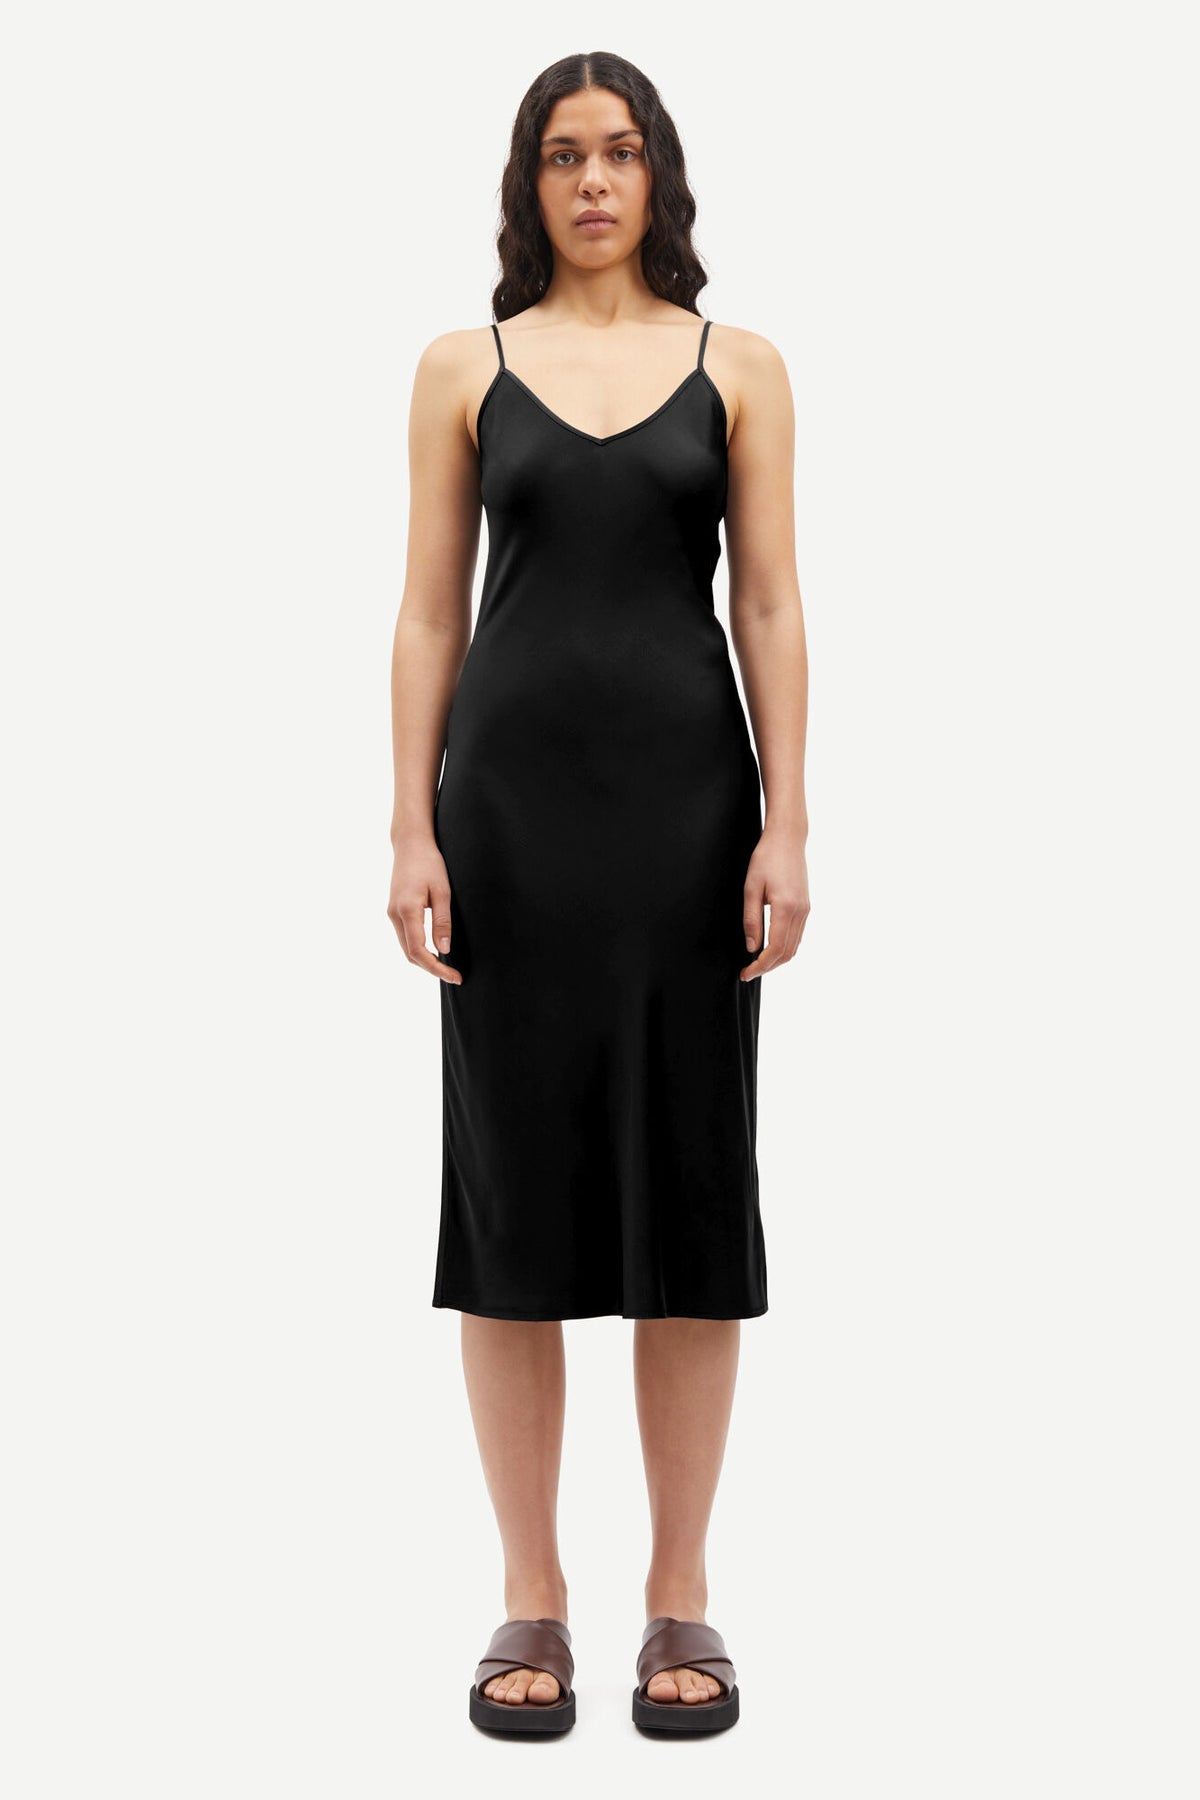 Black slip dress with adjustable straps and V neck and backline